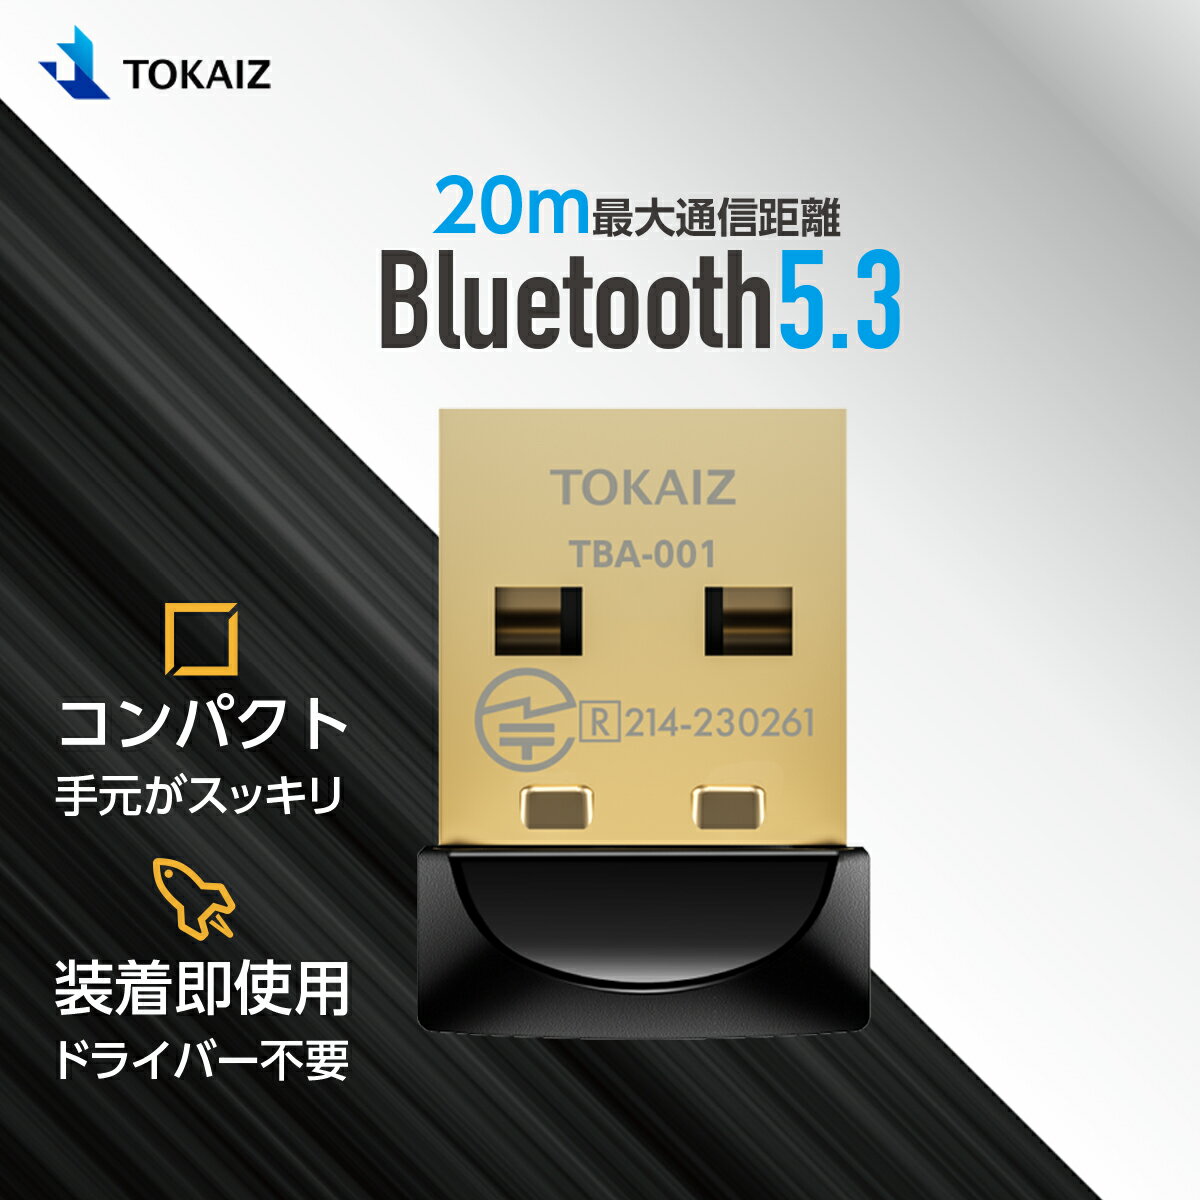 120円OFFクーポンあり! TOKAIZ Bluetooth 